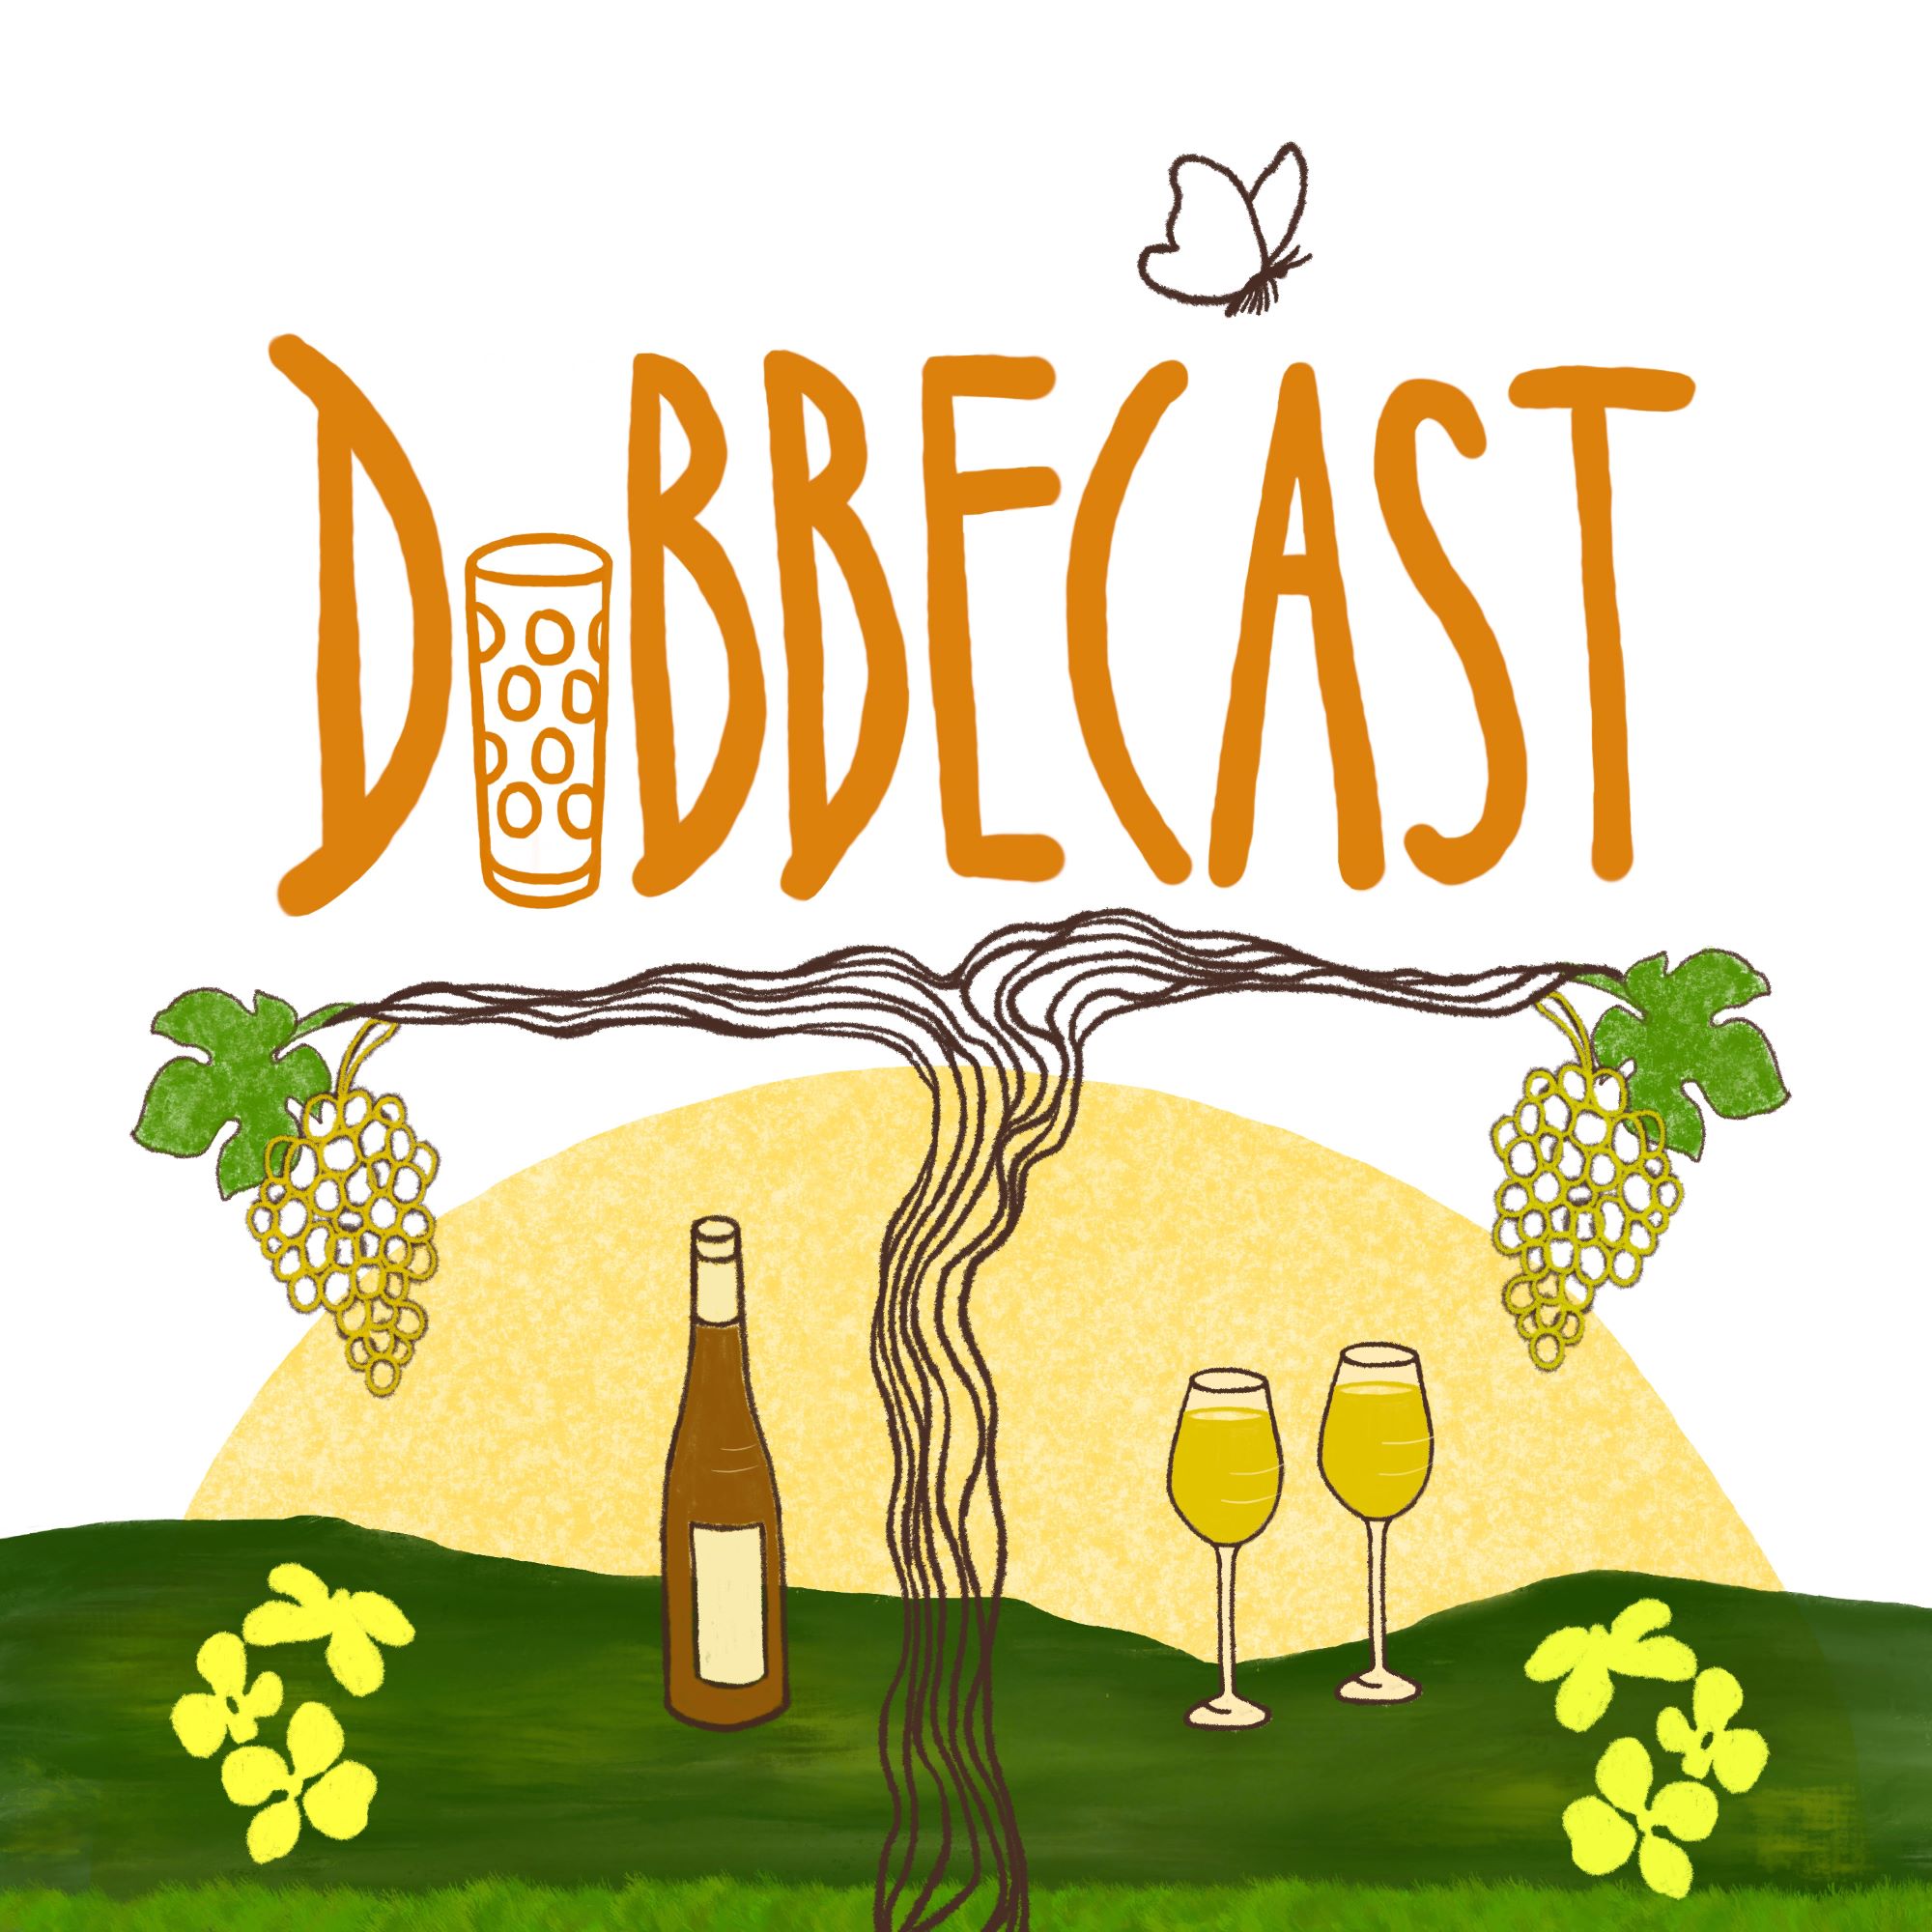 Dubbecast - Der Pfalzweinpodcast